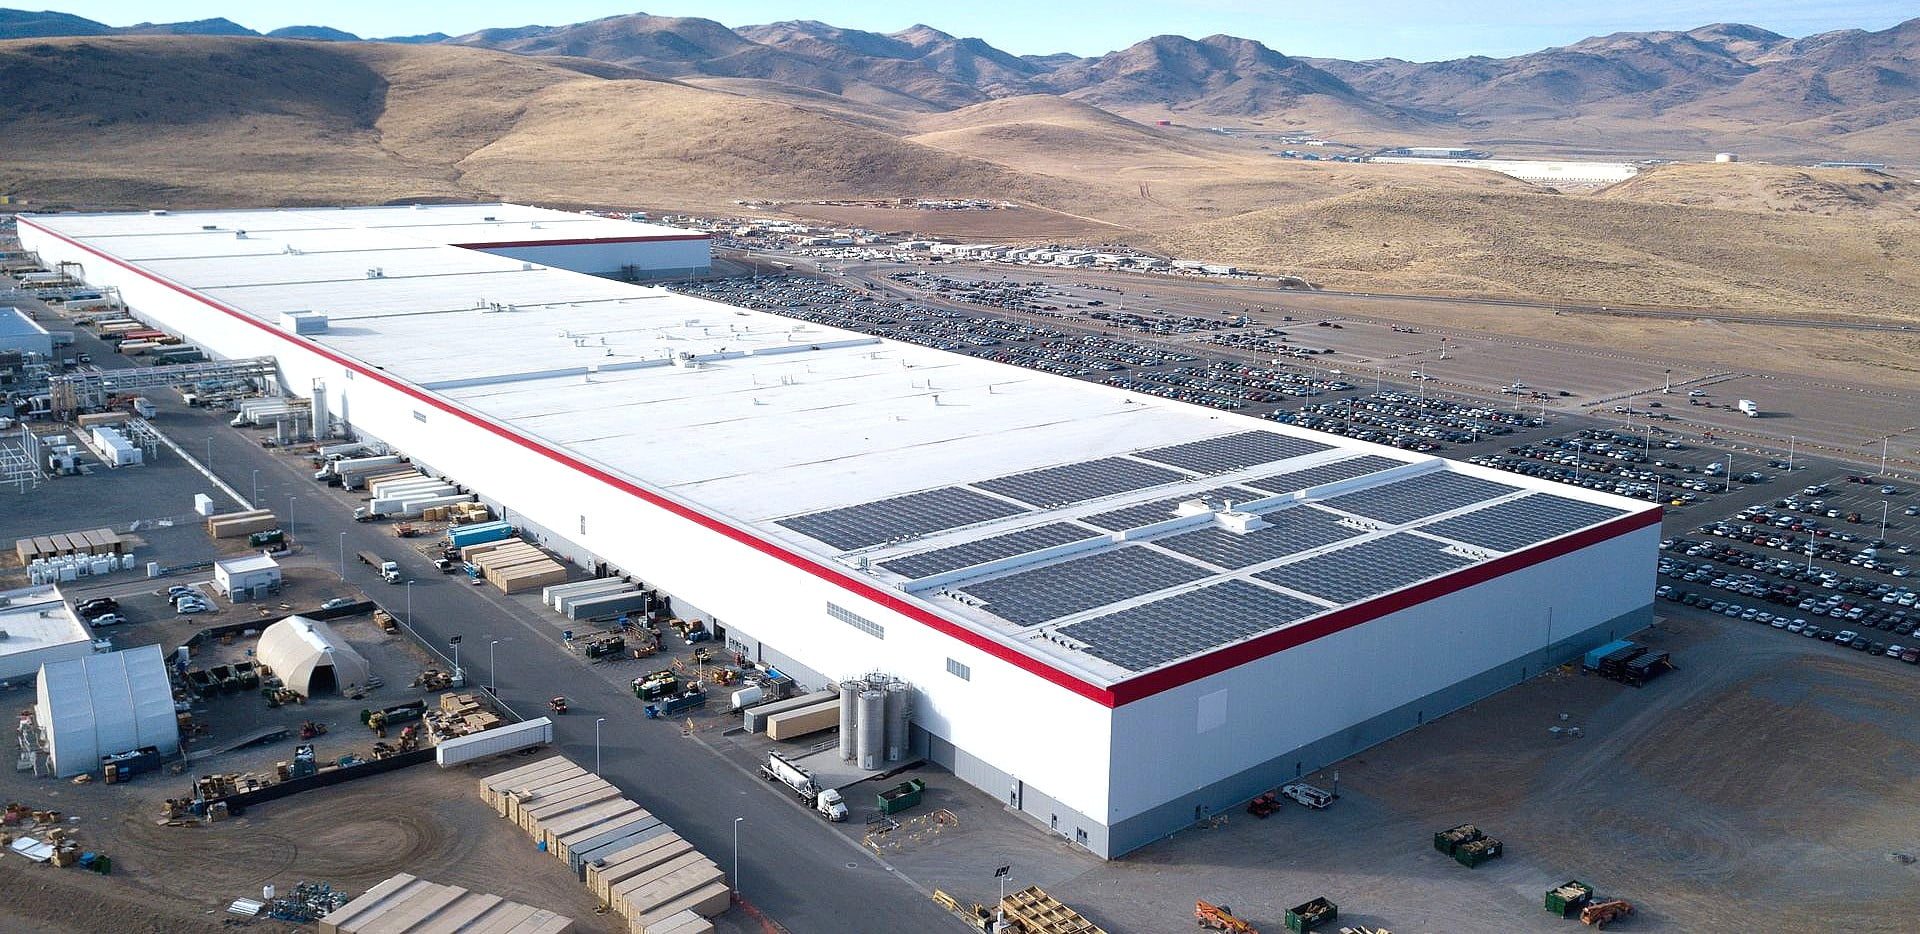 Panasonic, fournisseur de Tesla, annonce une nouvelle formation et un campus de R&D près de la Gigafactory au Nevada